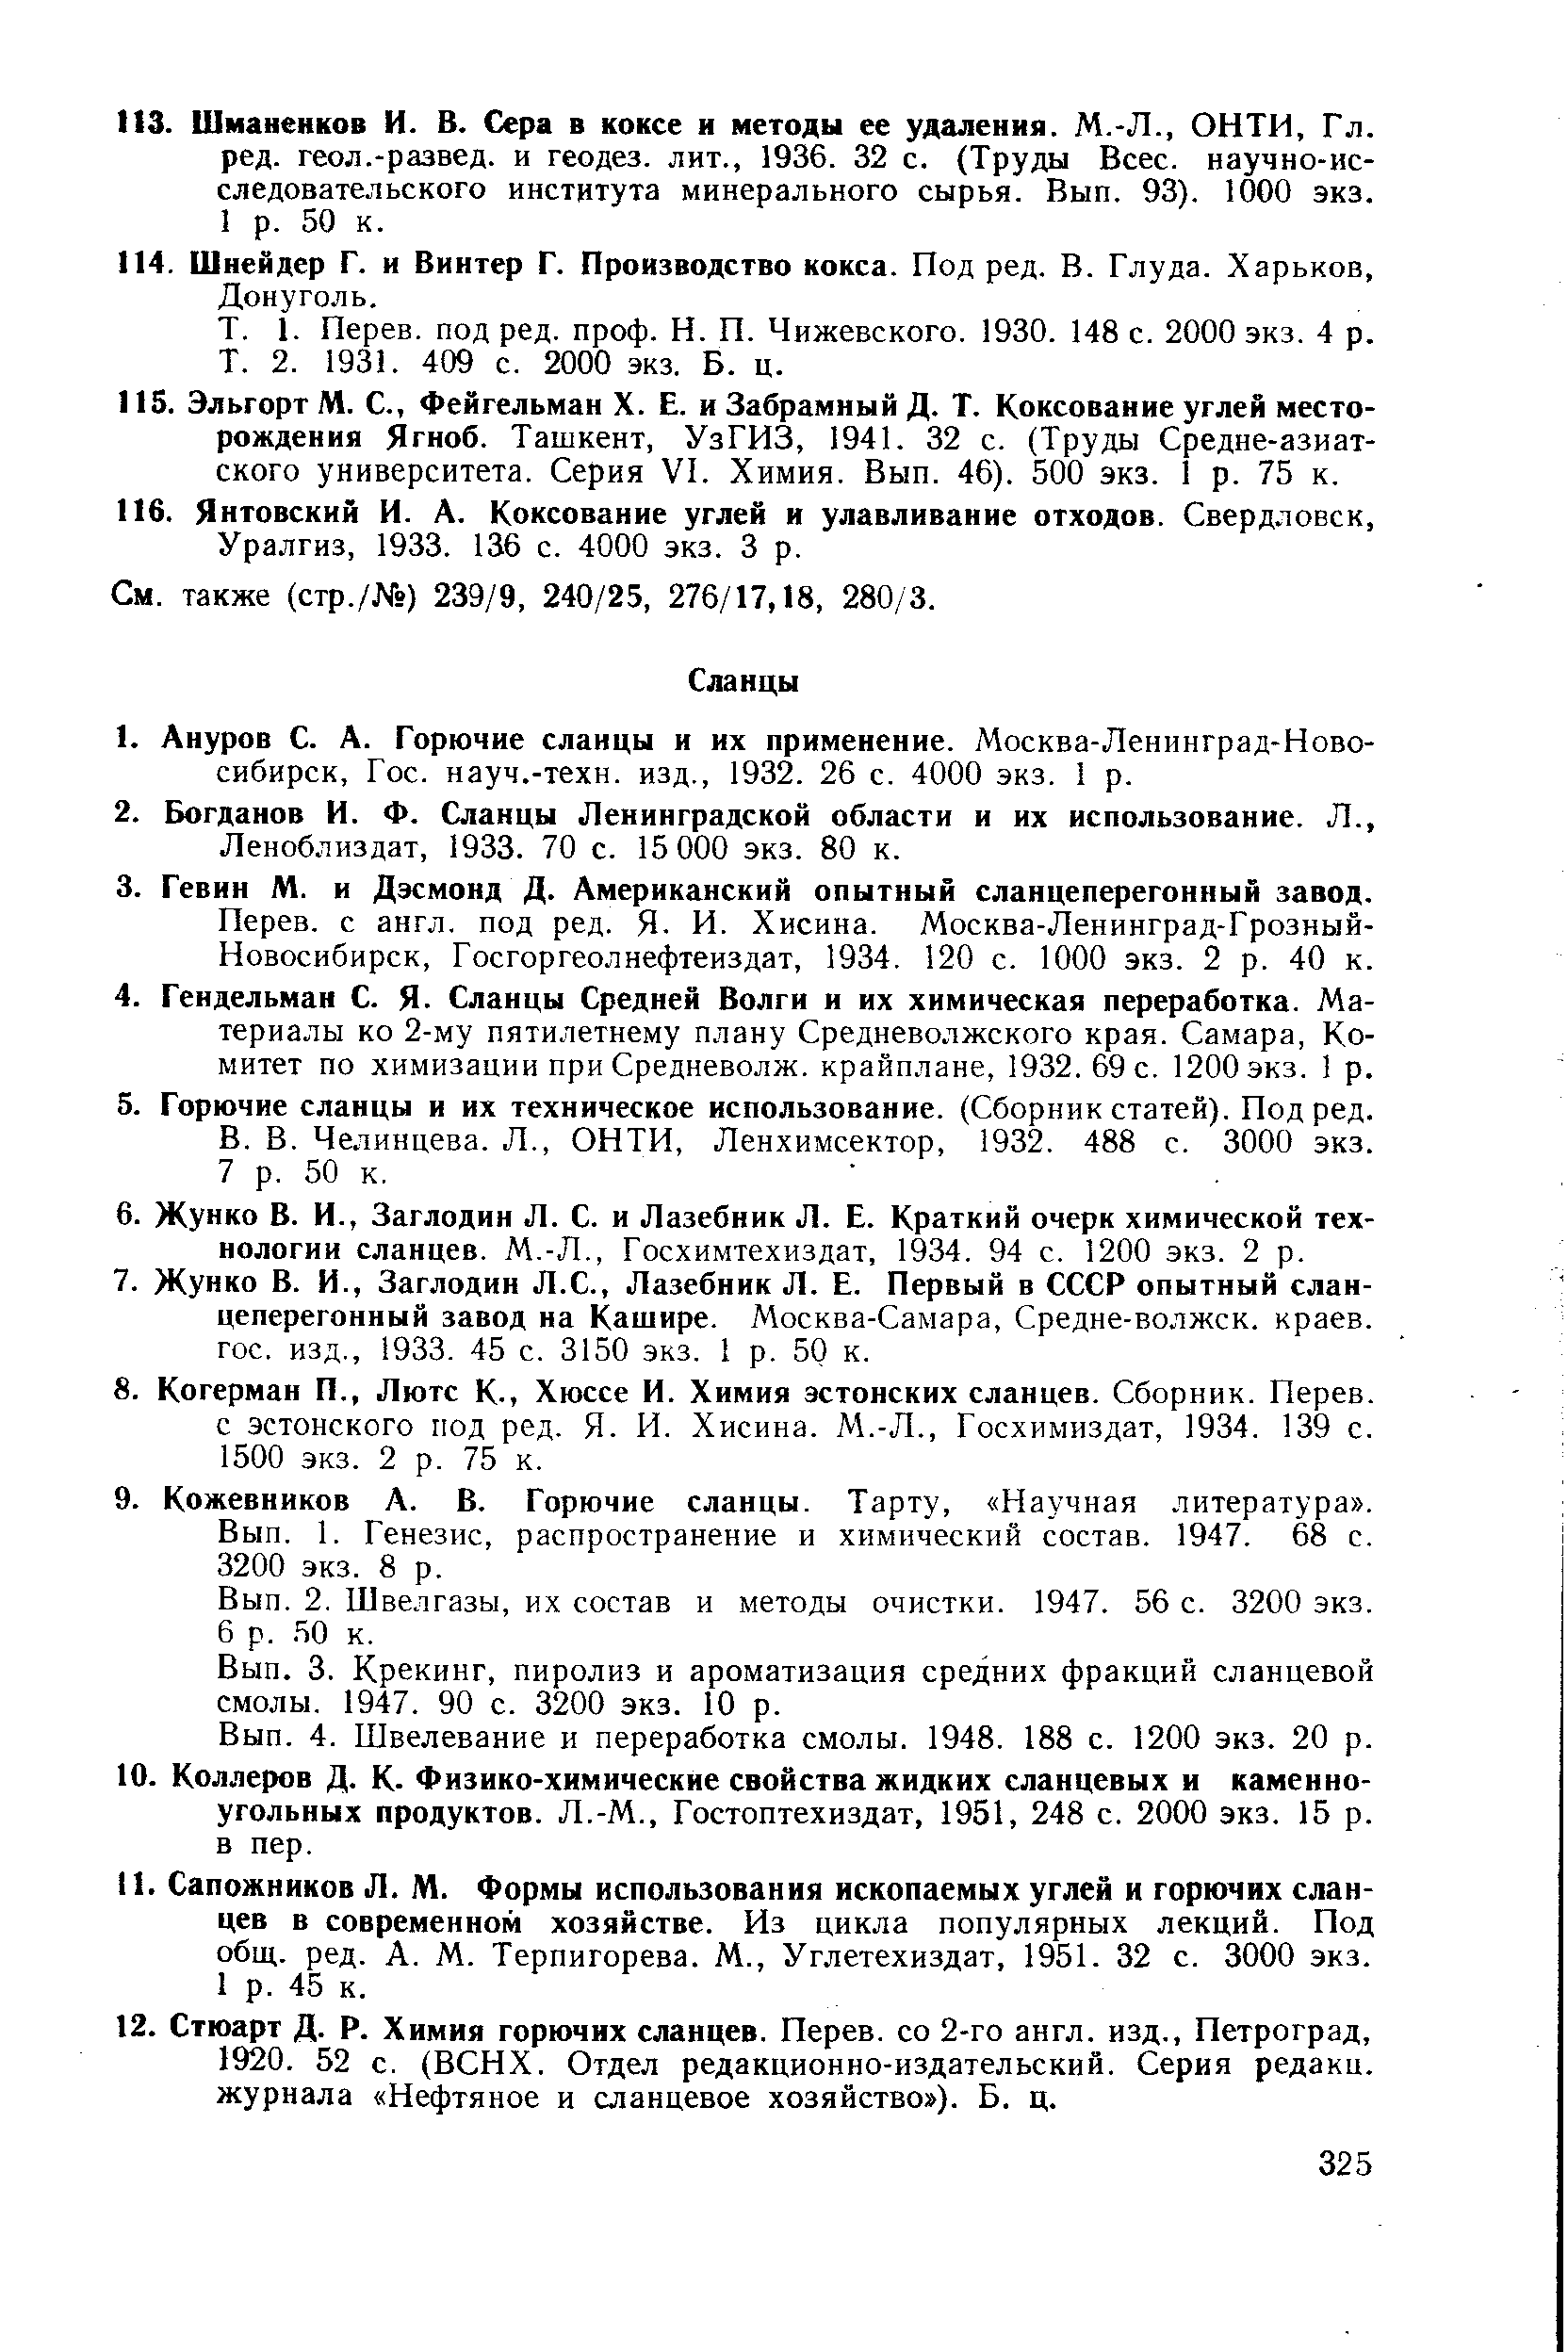 Челинцева. Л., ОНТИ, Ленхимсектор, 1932. 488 с. 3000 экз.